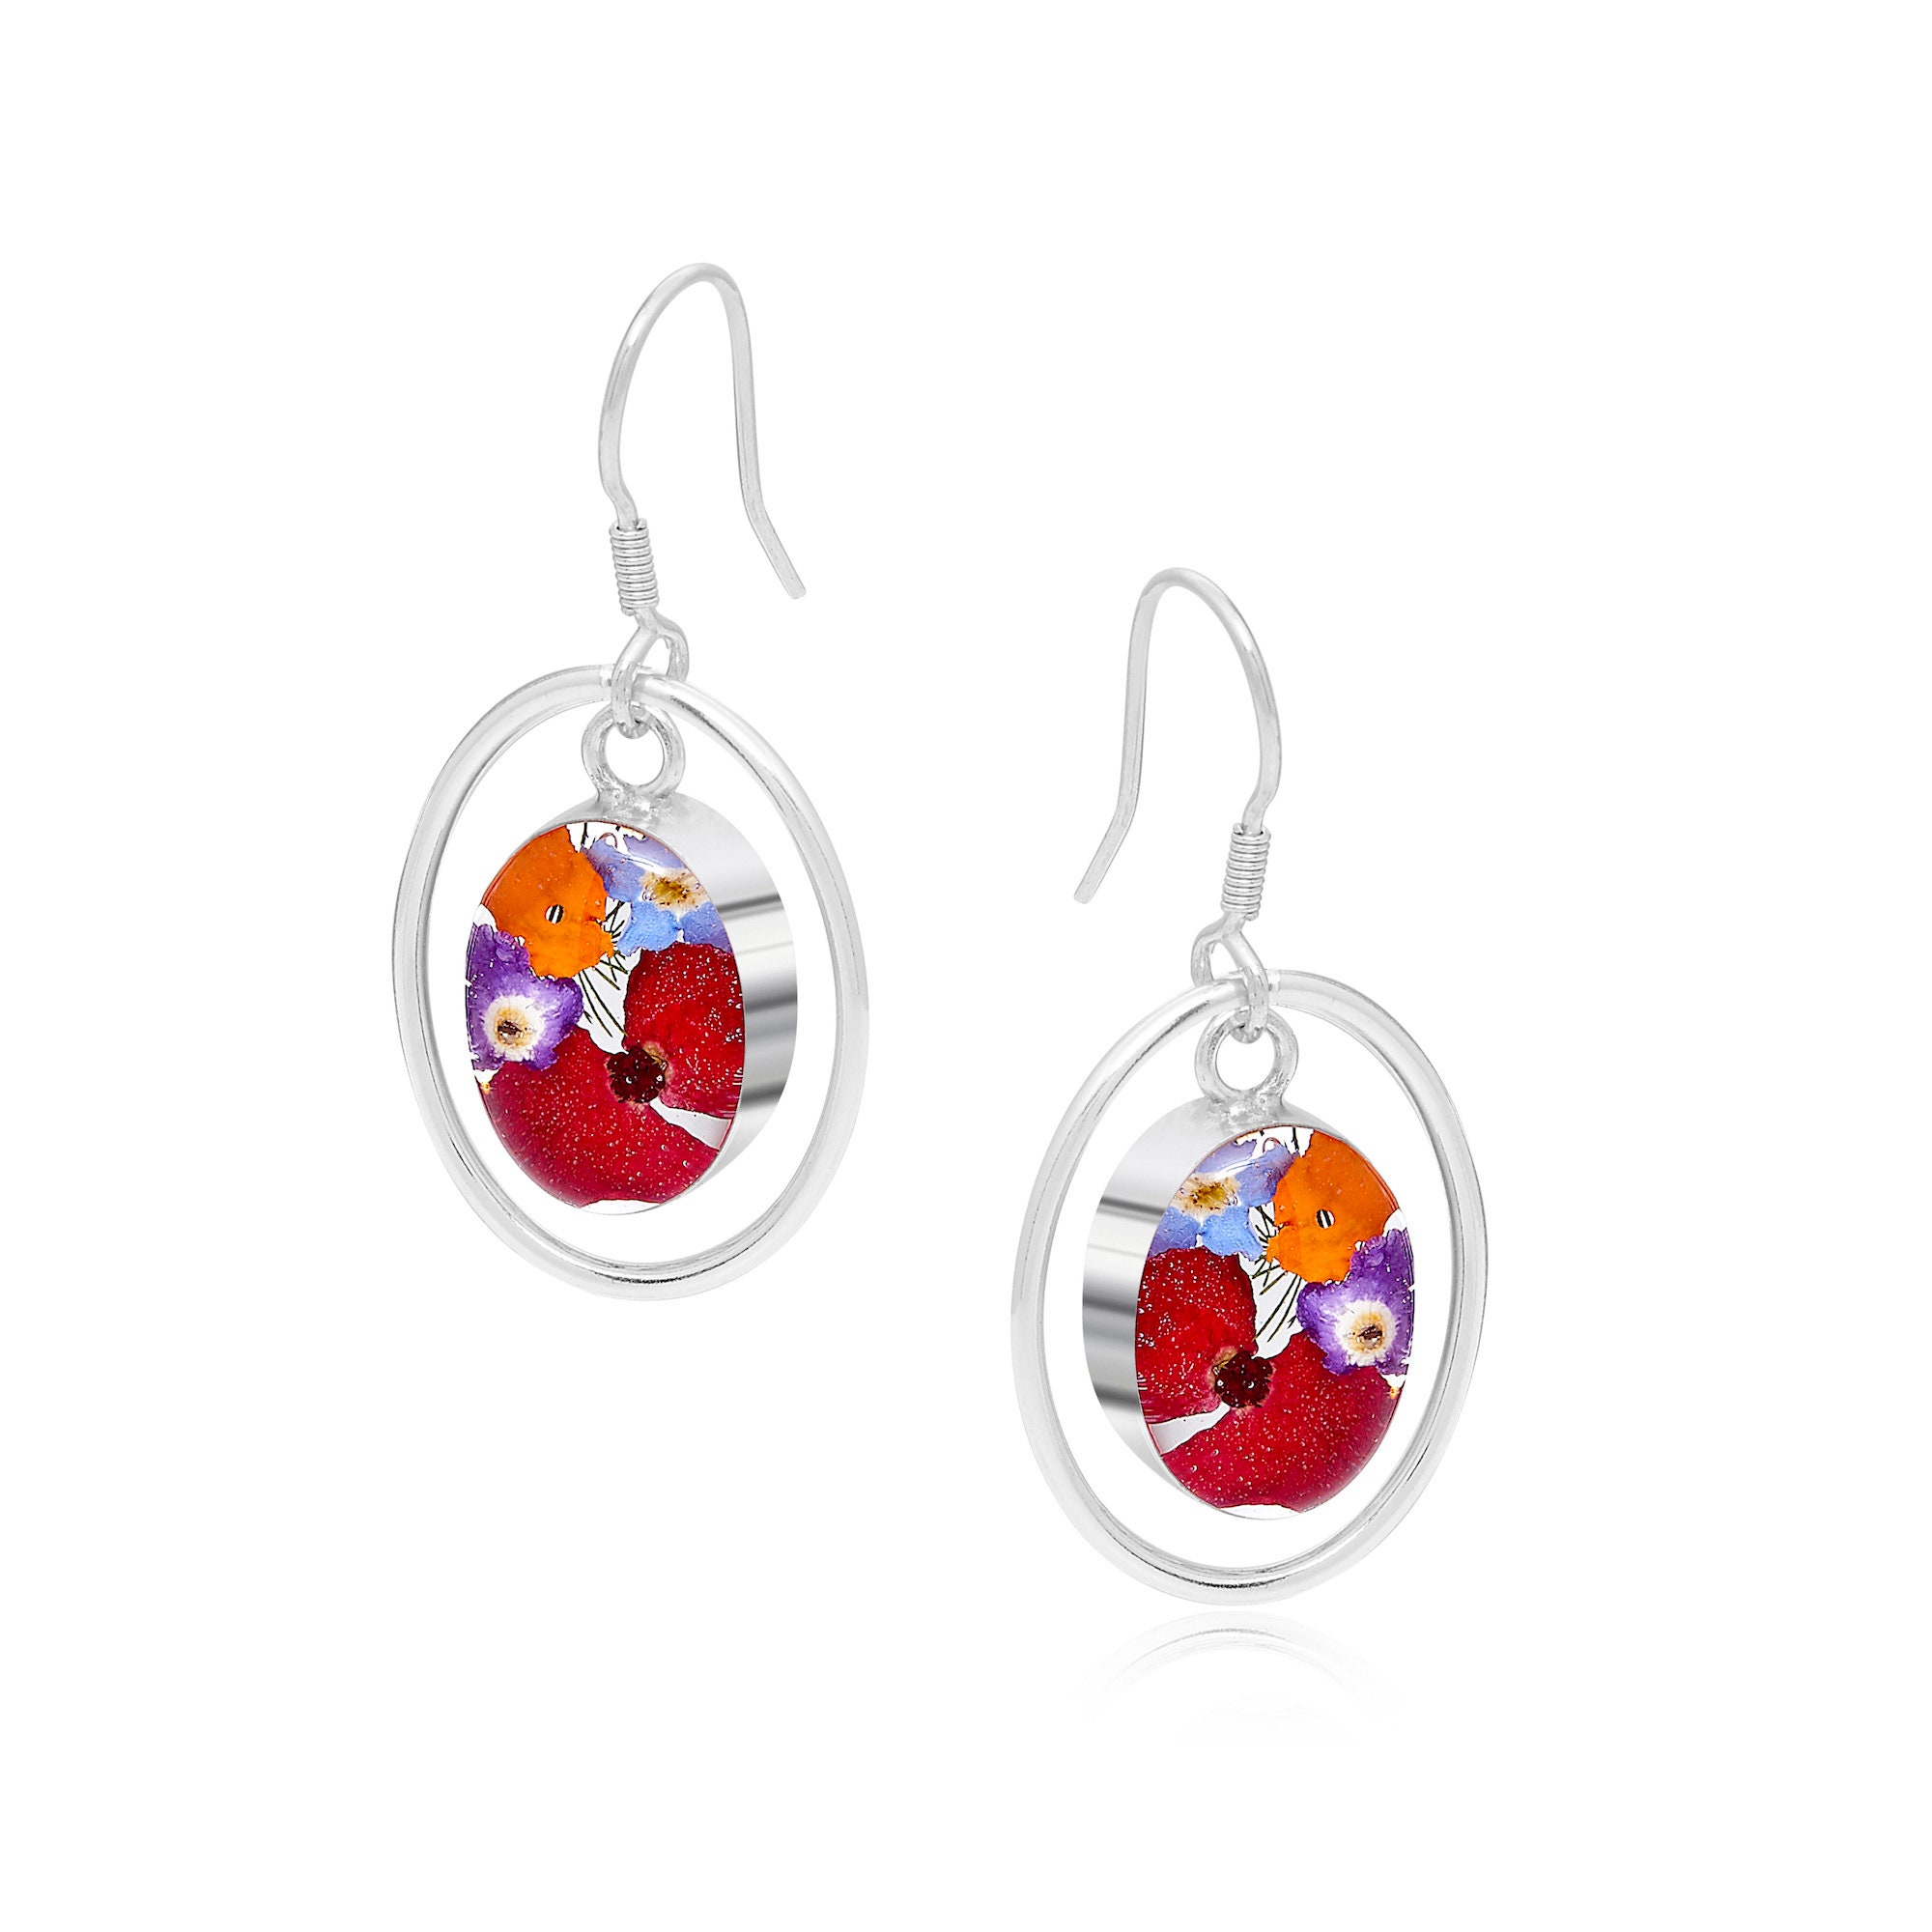 Dangle drop flower earrings by Shrieking Violet\u00ae Sterling silver earrings with hoop Handmade with real pink heather